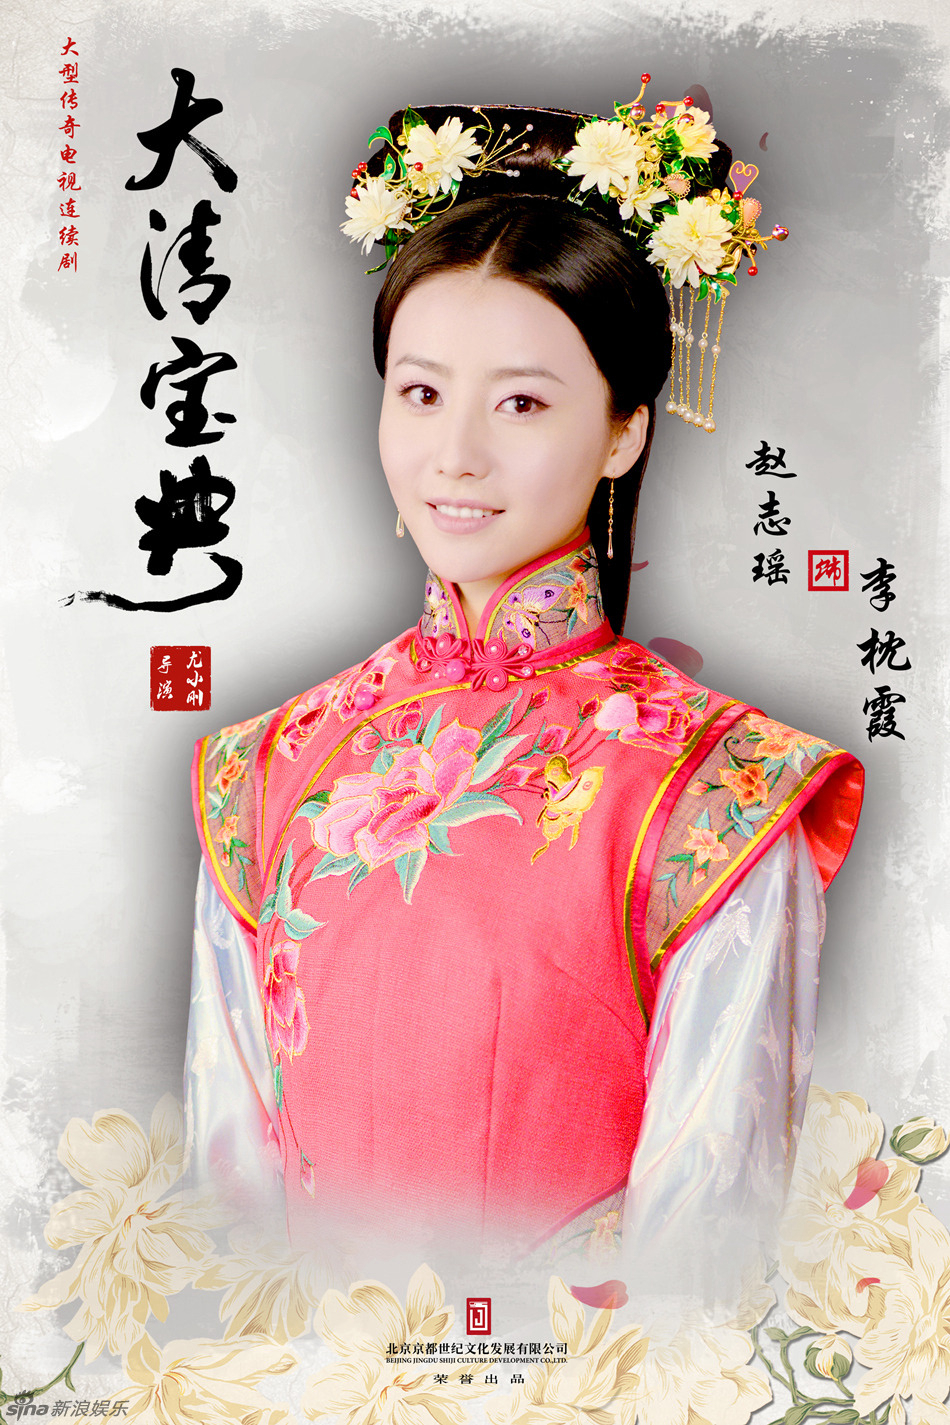 Xem Phim Vòng Xoáy Vương Quyền (Esoterica Of Qing Dynasty)